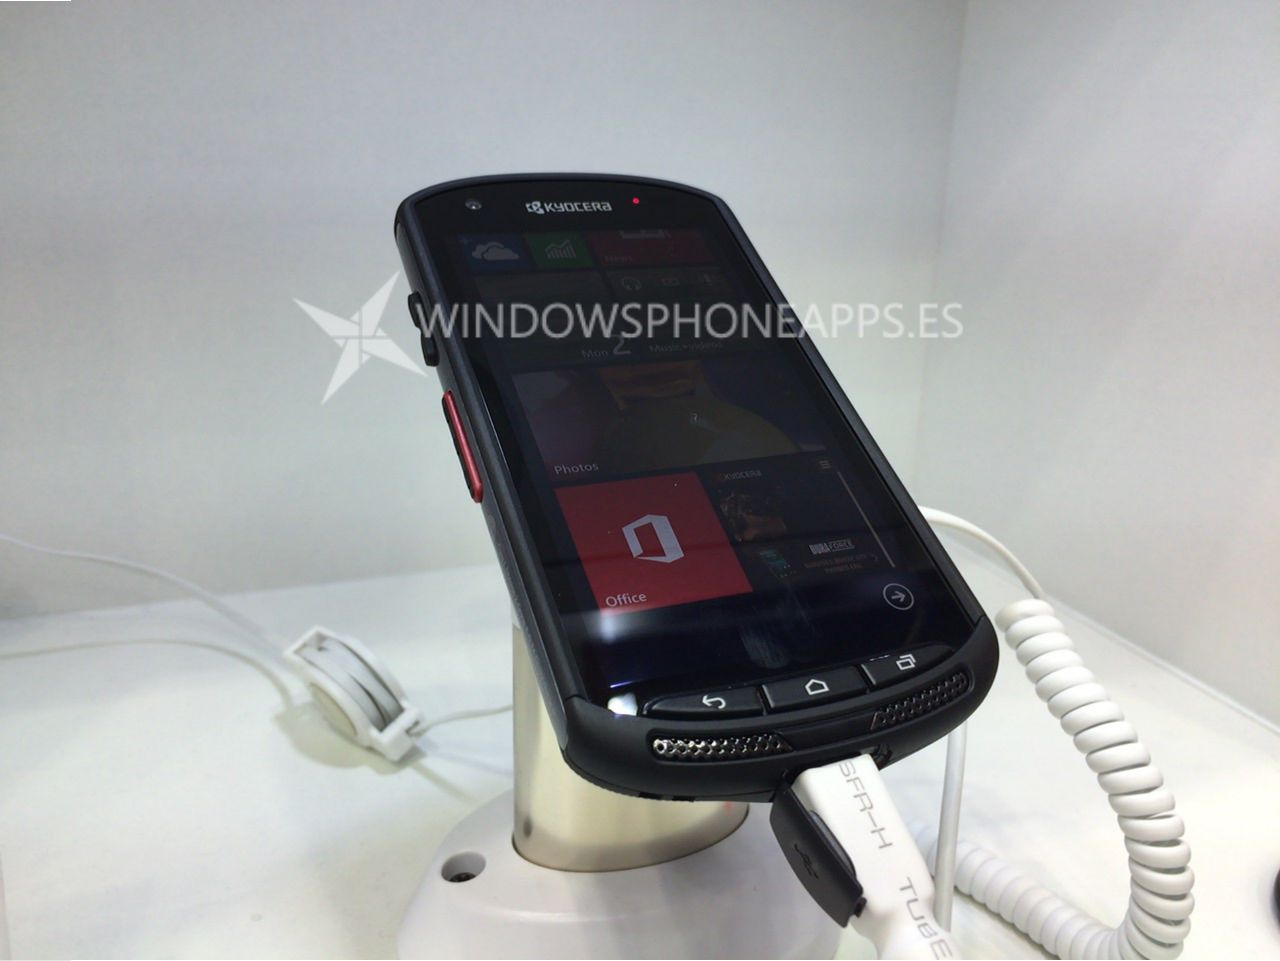 Torque, el "terminator" de los moviles, presentado en el MWC con Windows Phone [Actualizado con video]